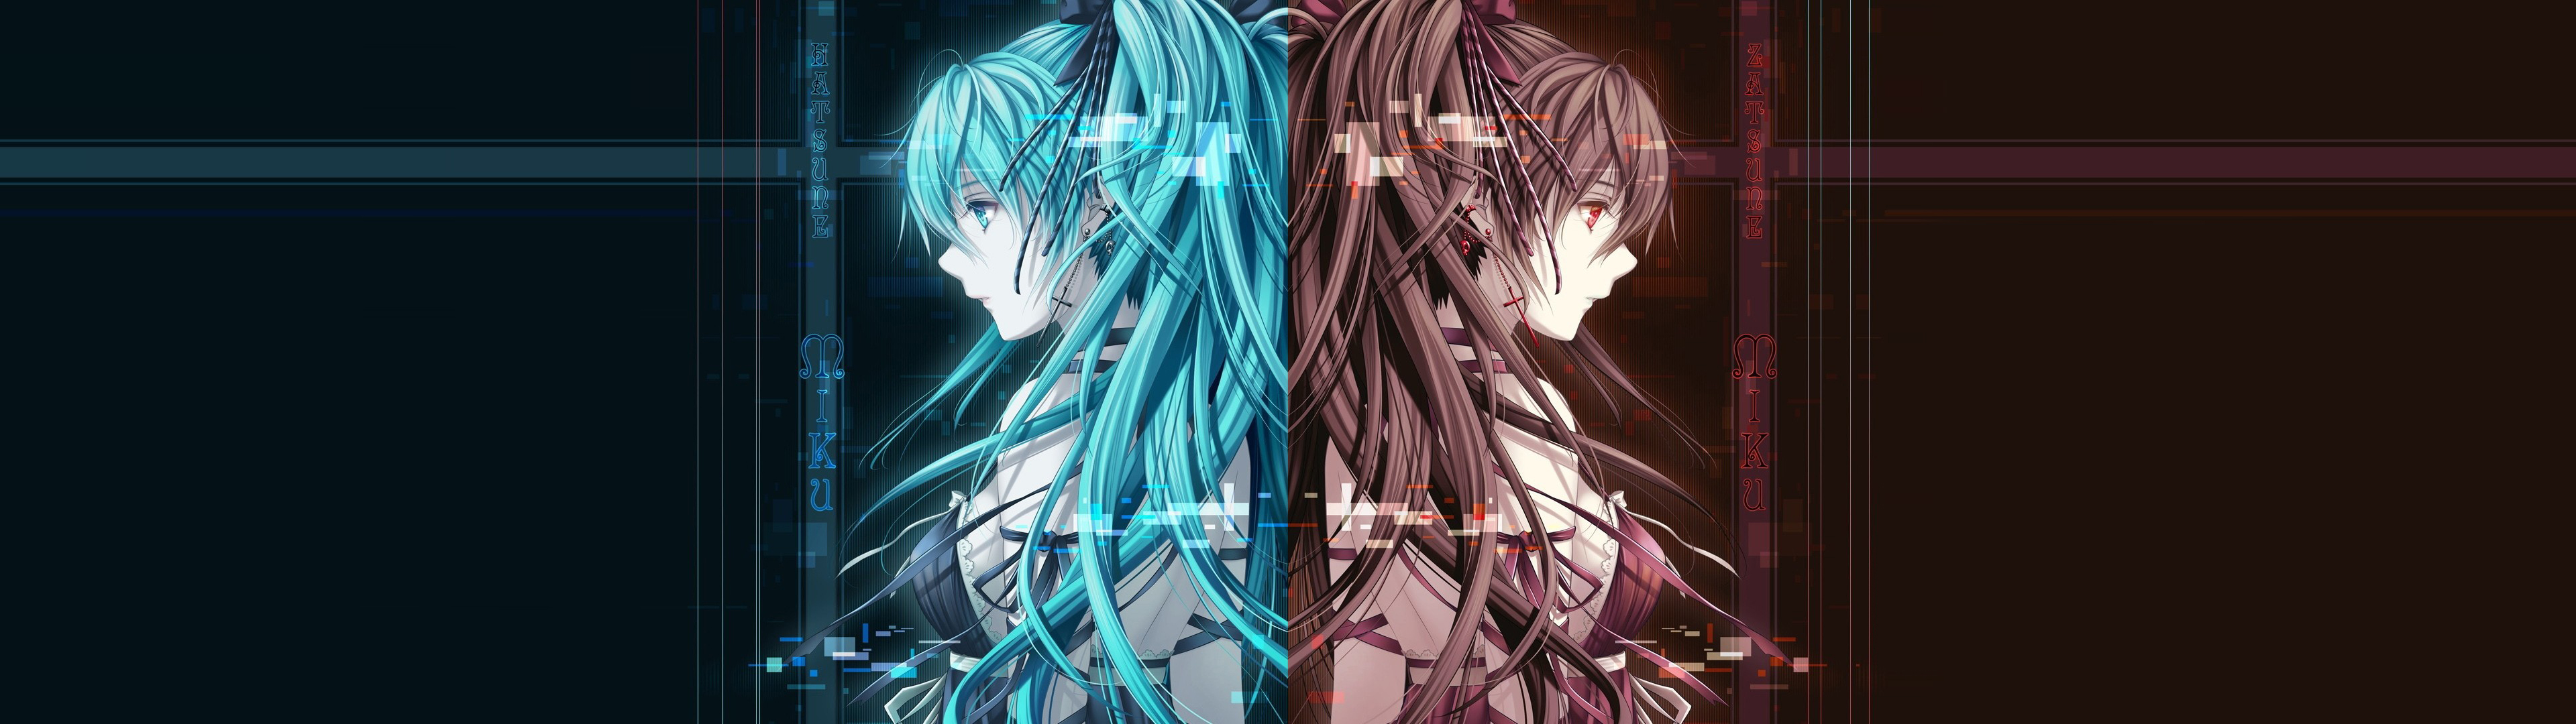 Anime Dual Monitor Wallpaper - WallpaperSafari